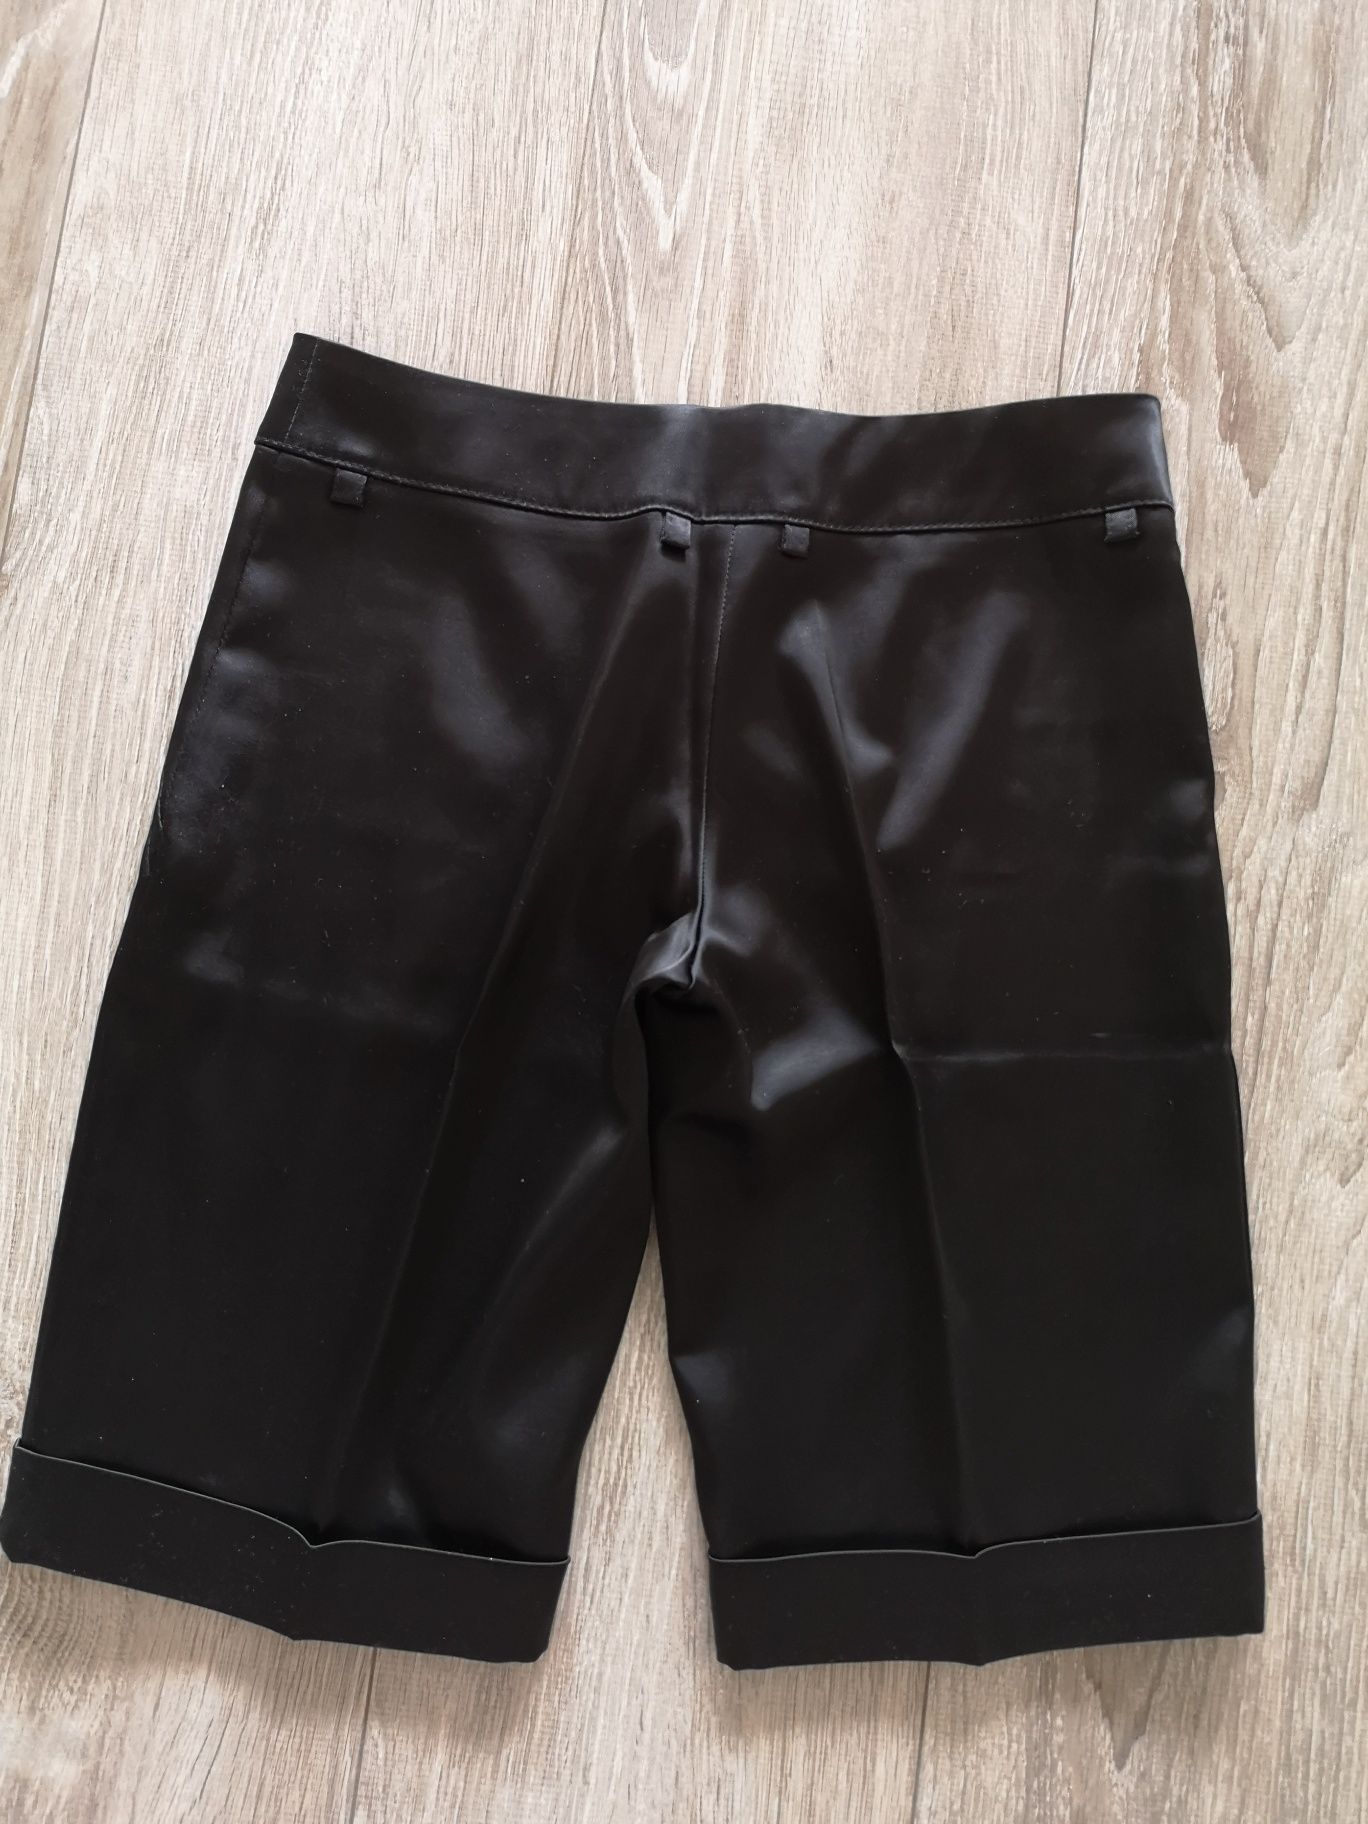 Spodnie spodenki krótkie 38 M eleganckie nowe szorty czarne kanty